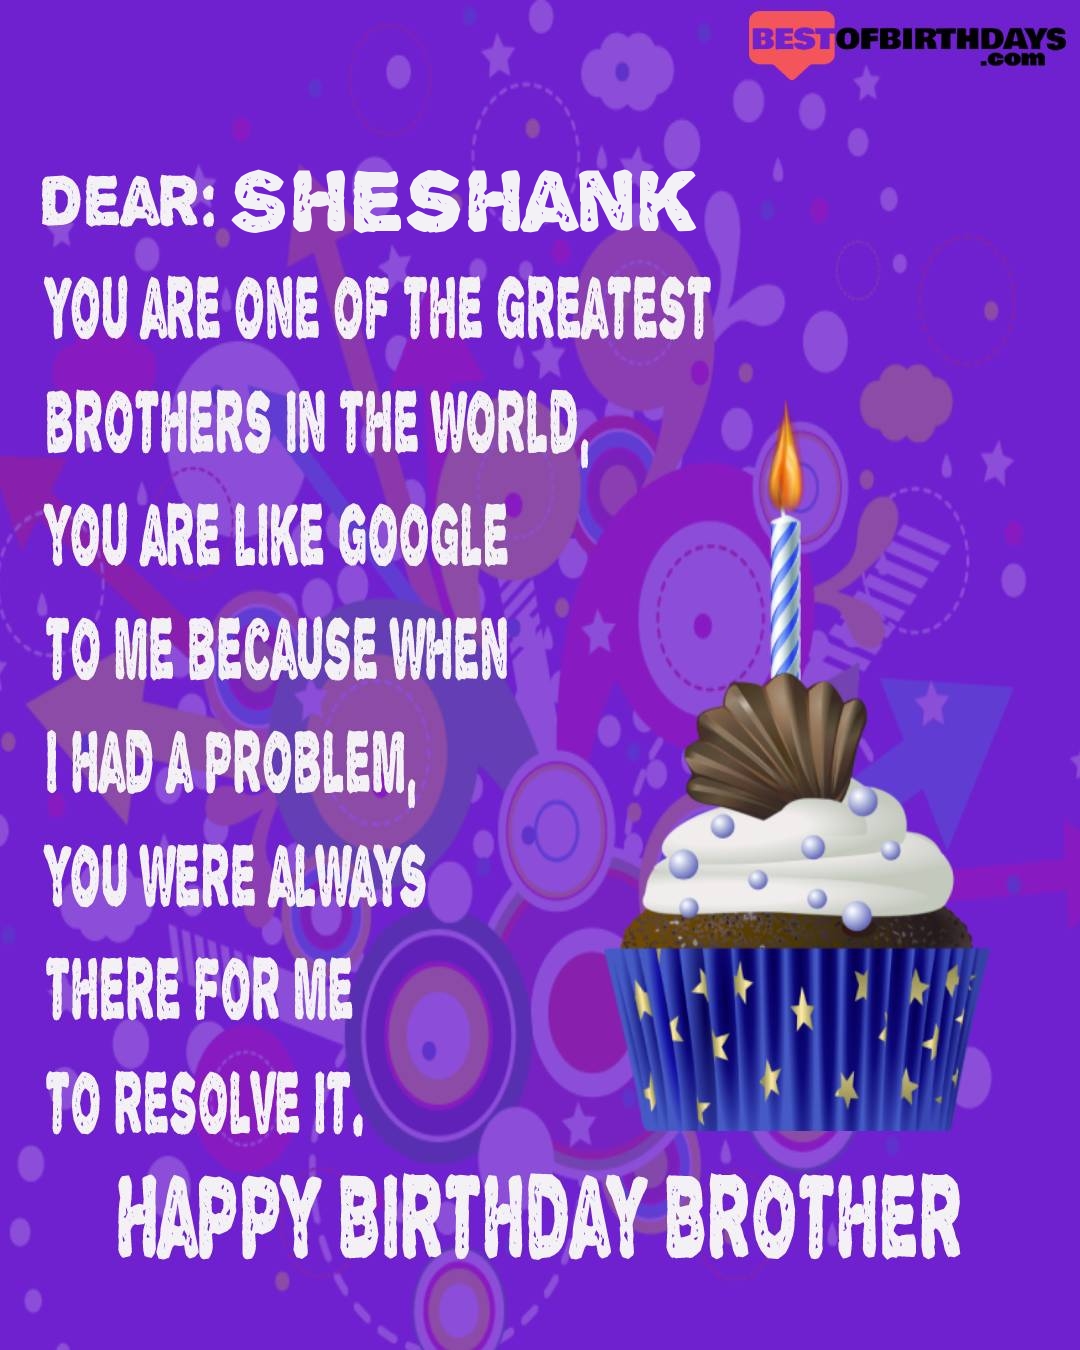 Happy birthday sheshank bhai brother bro